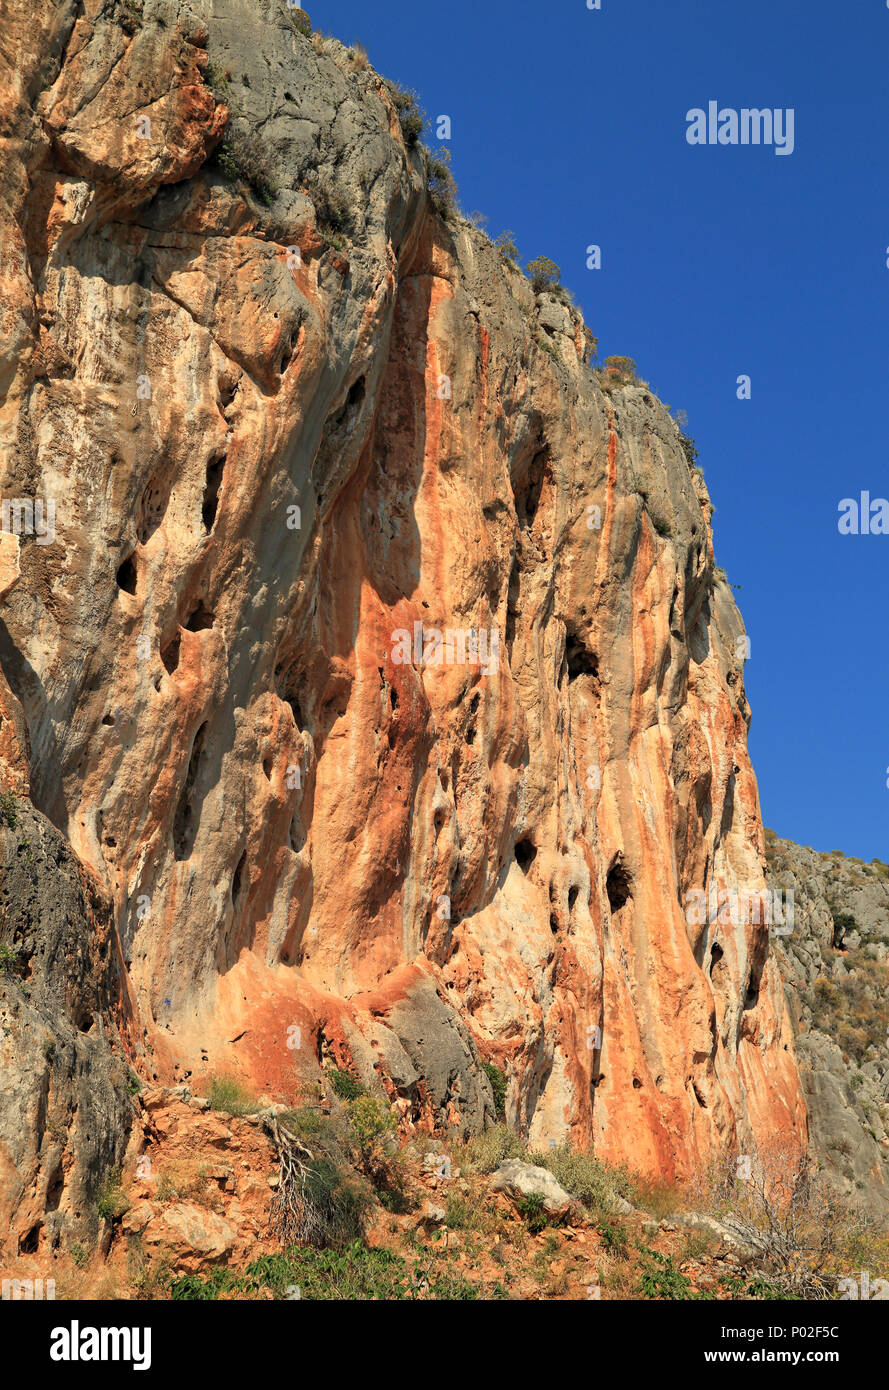 Cliff rock climbing area at Nafplio coast mountains, Greece Stock Photo